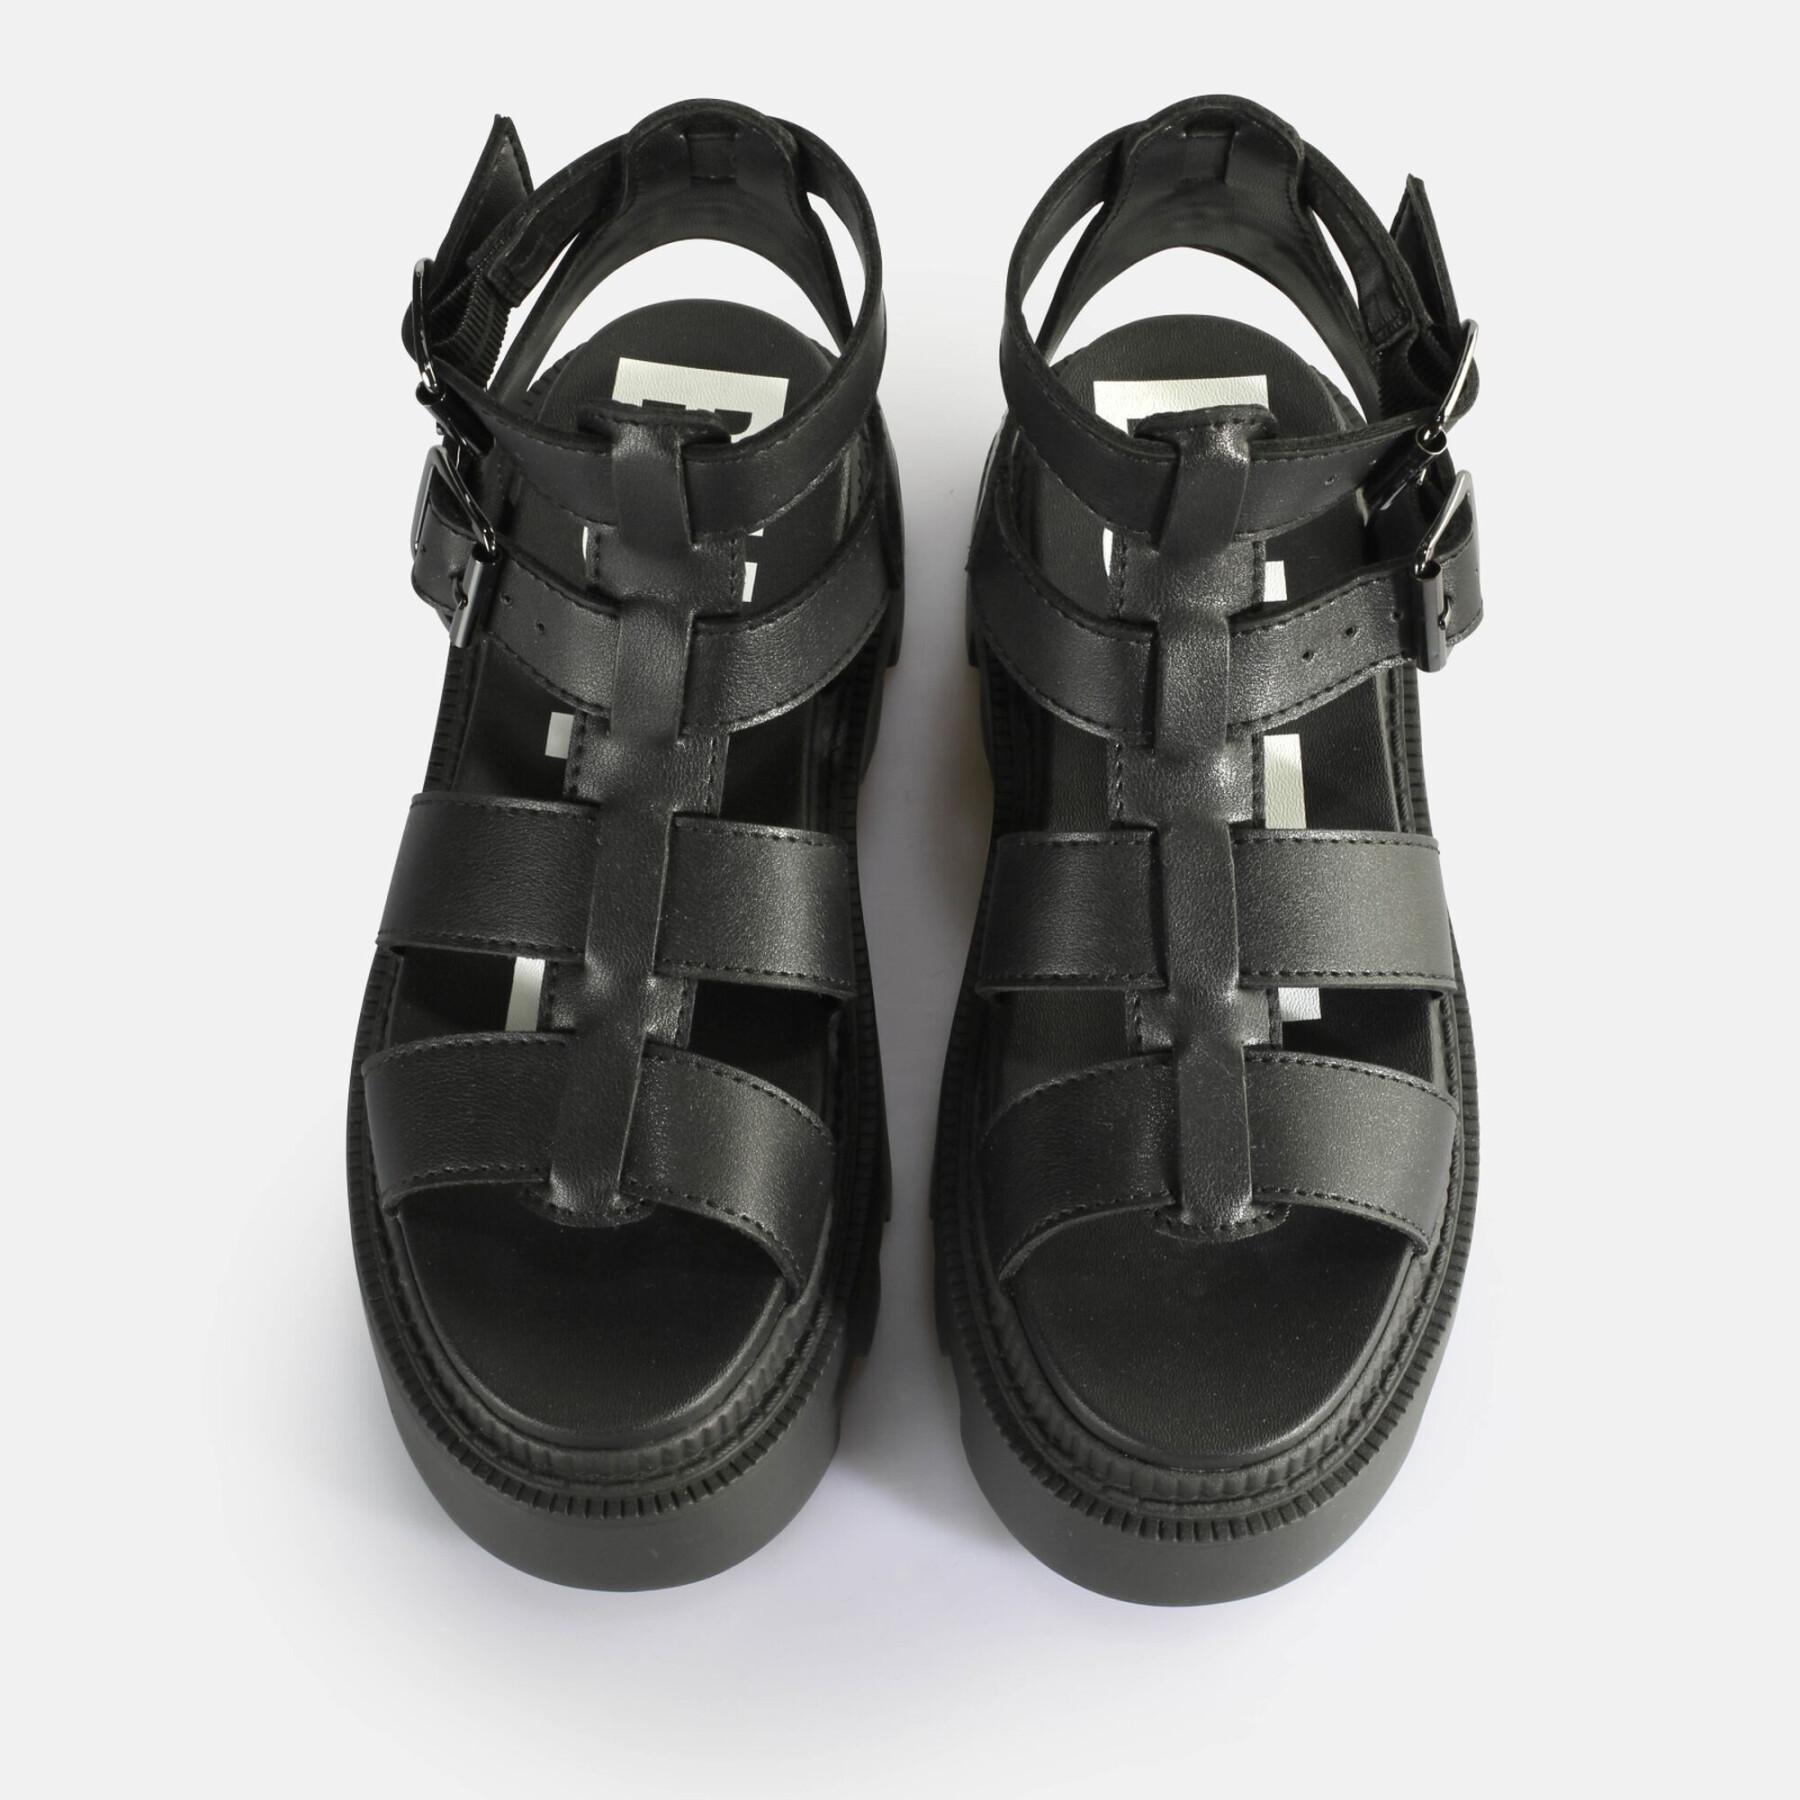 Platform sandals for women Buffalo Flora Fisher